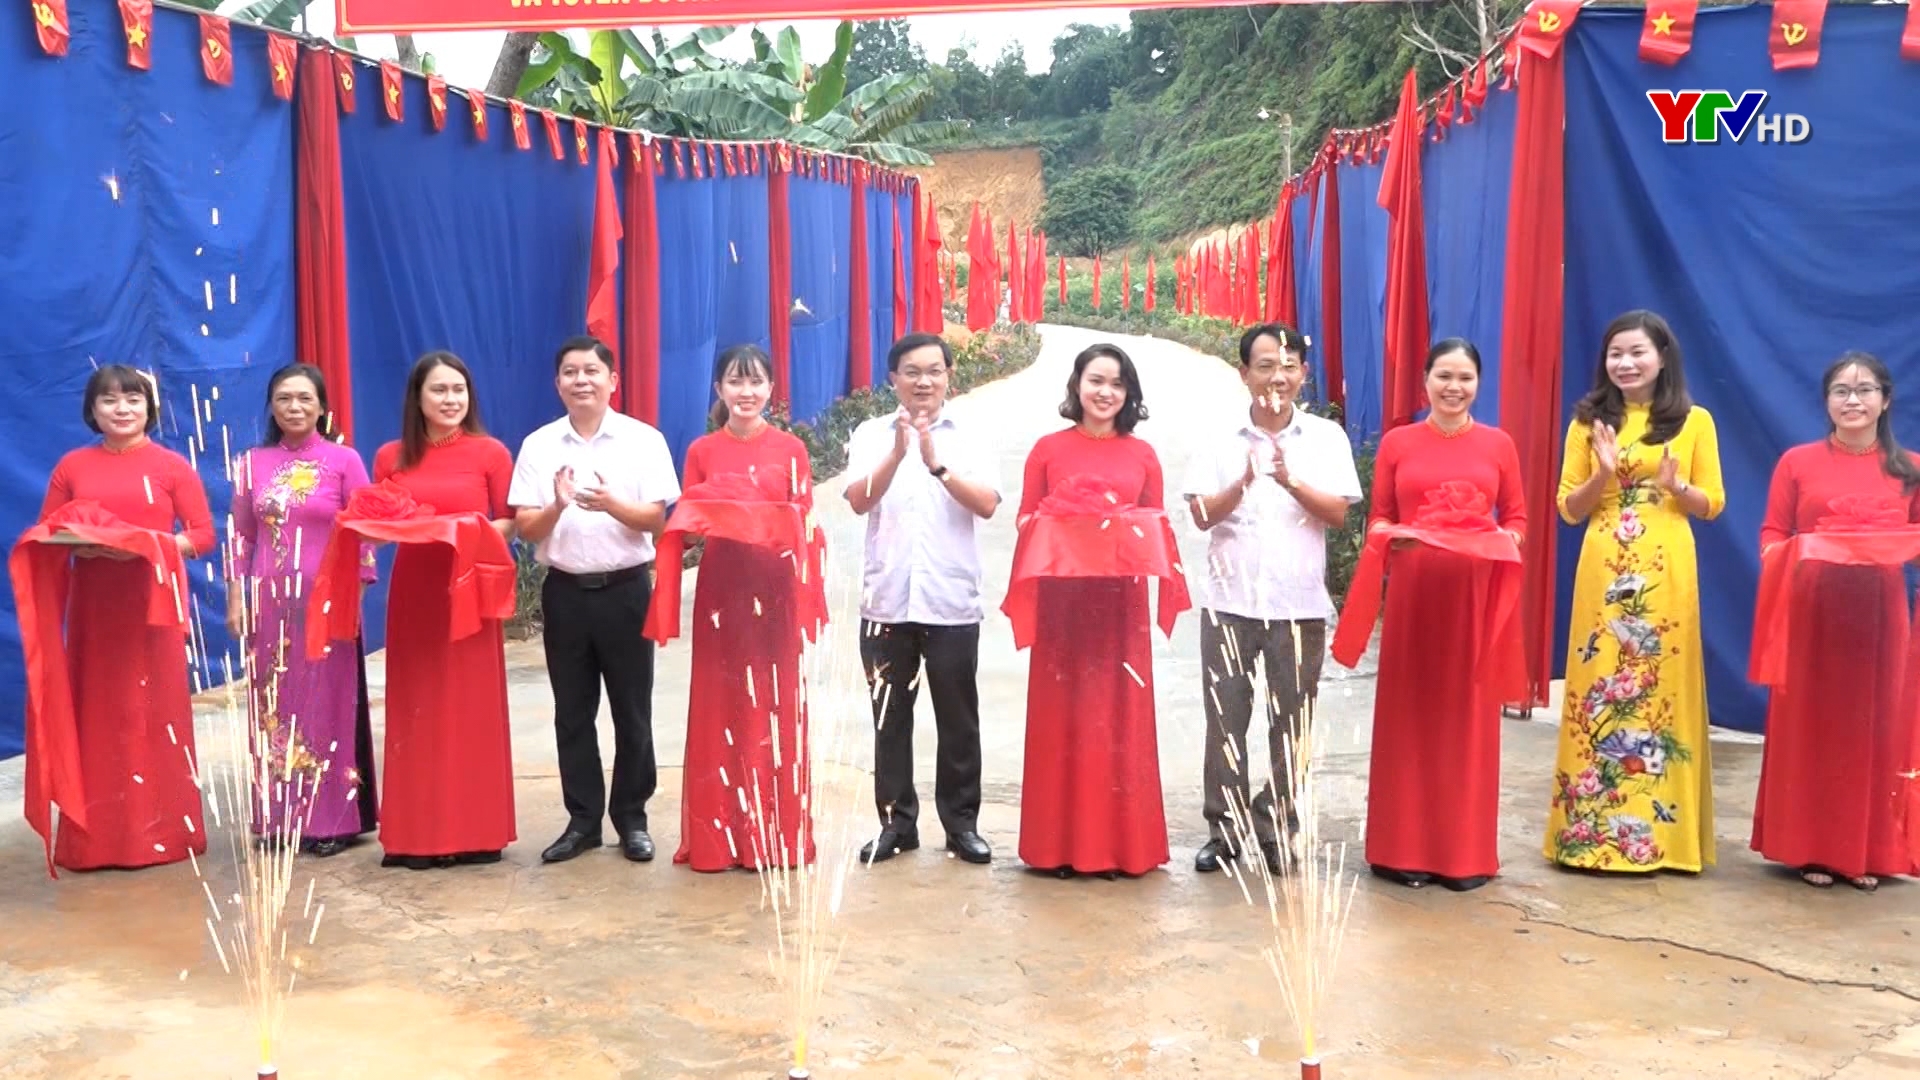 Thành phố Yên Bái khánh thành công trình chào mừng Đại hội Đảng bộ tỉnh Yên Bái lần thứ XIX